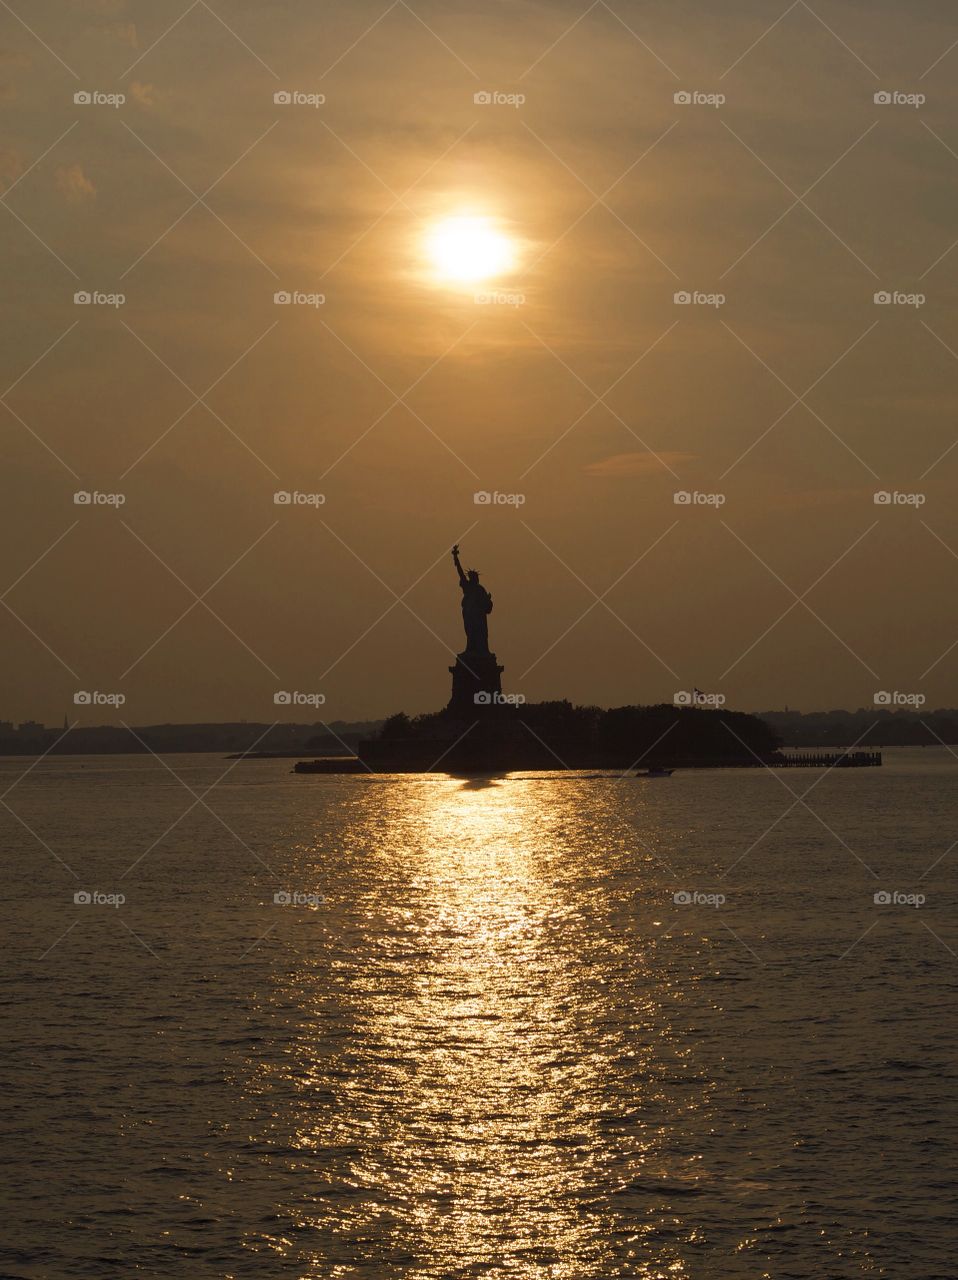 Sunset on Liberty